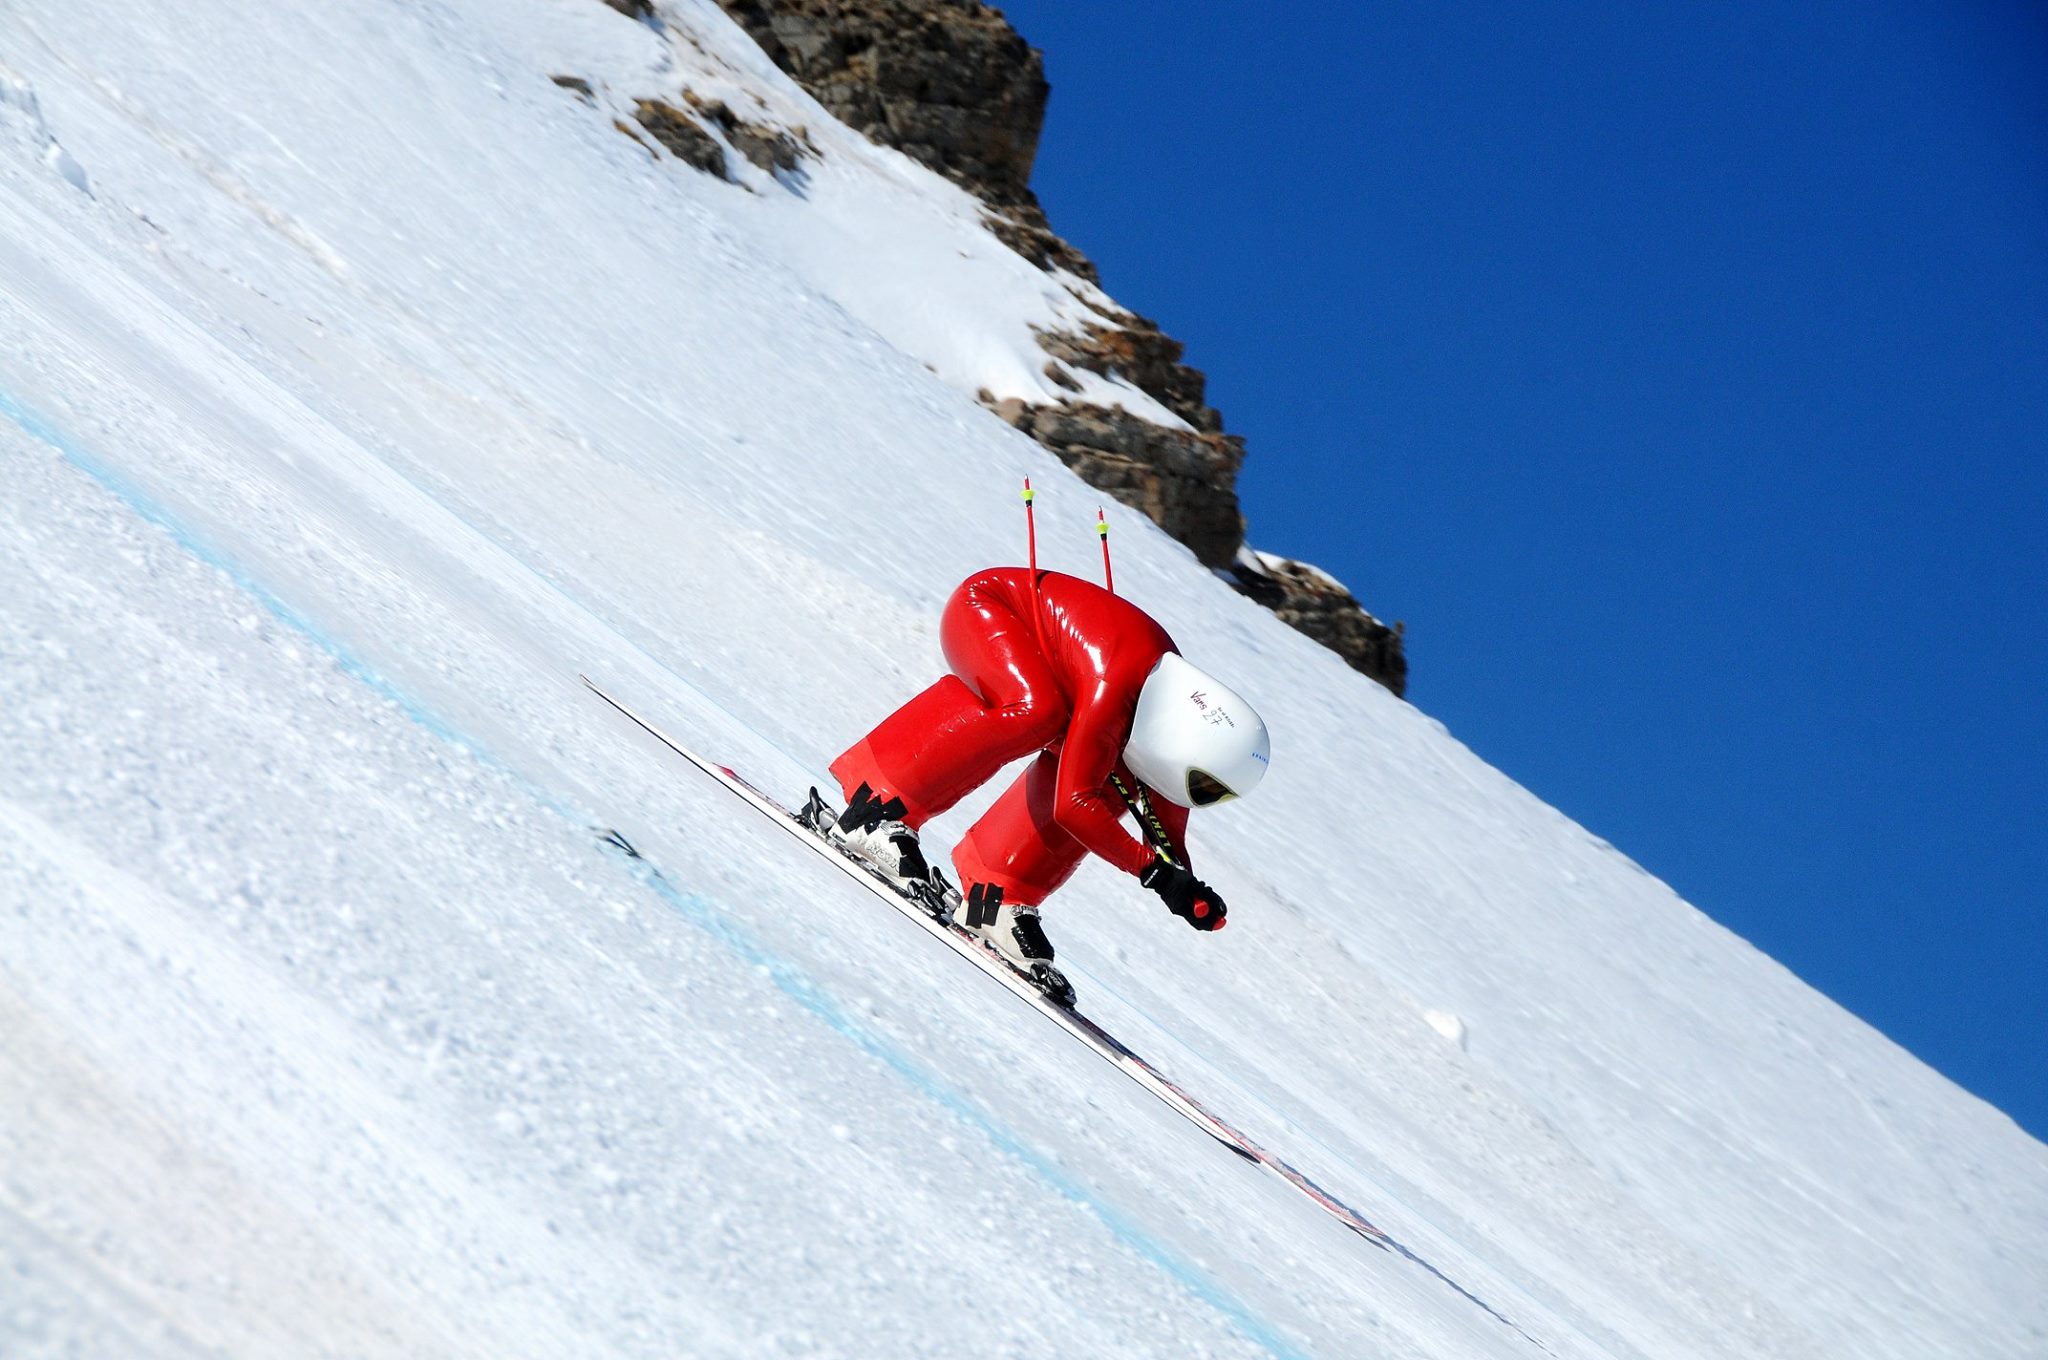 Juan Carlos Sánchez, segundo español en esquiar a 200 km/h